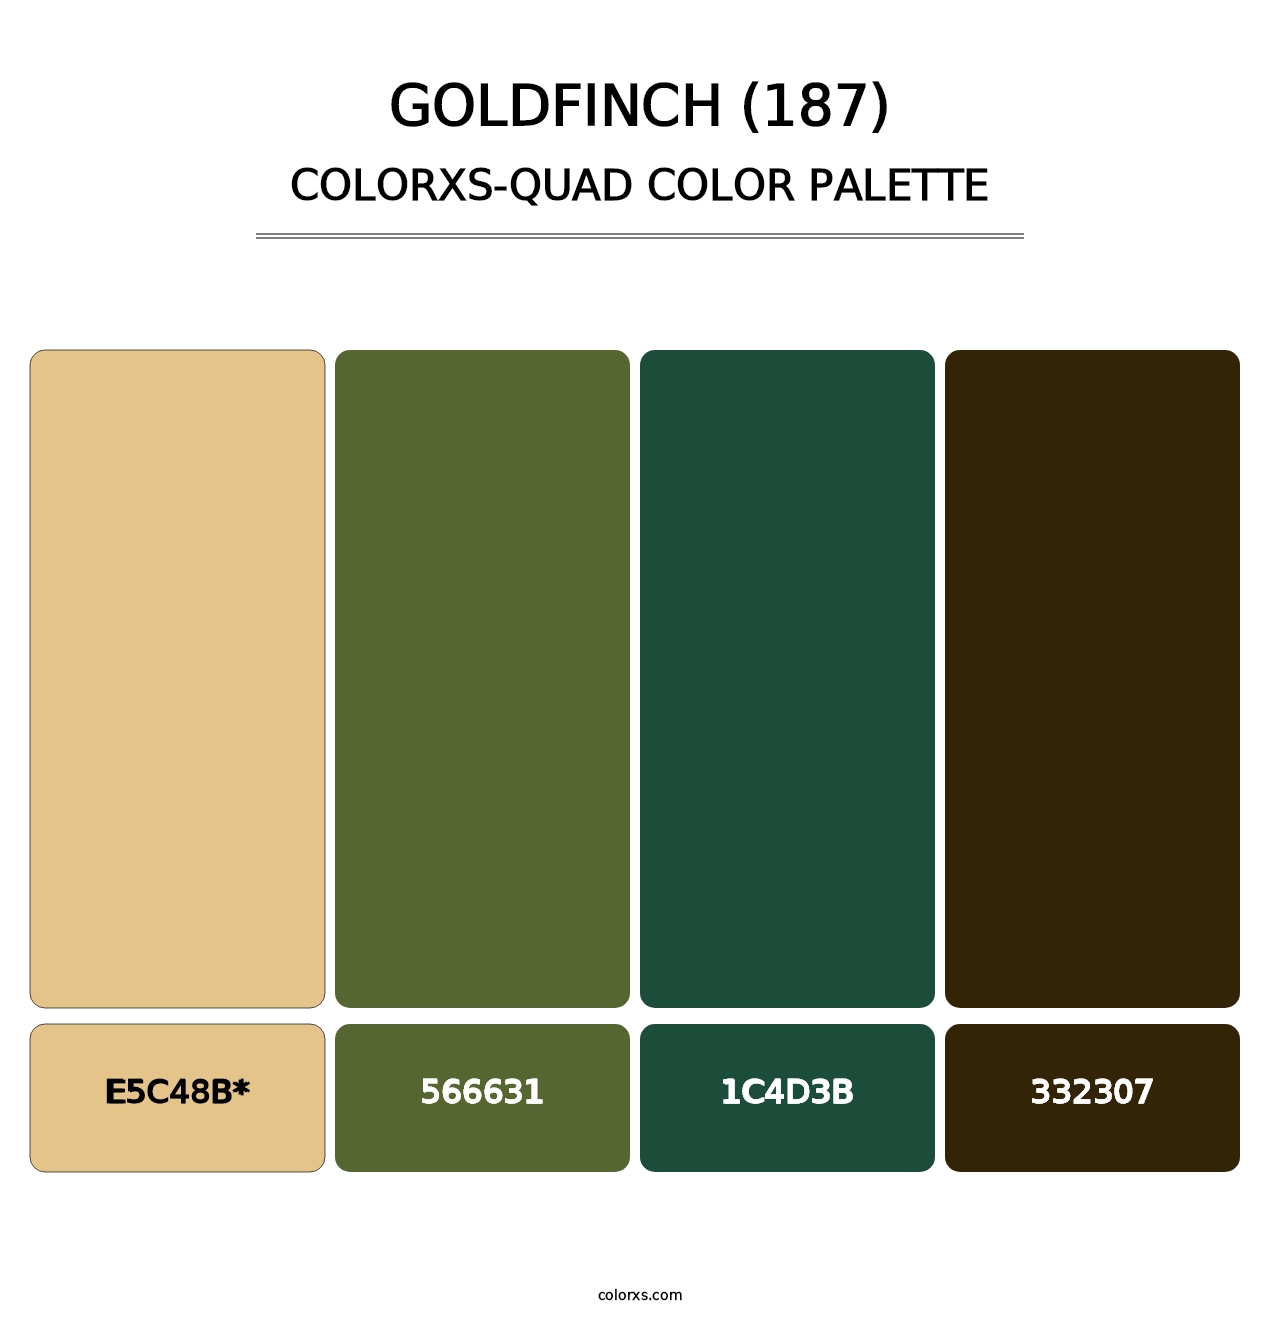 Goldfinch (187) - Colorxs Quad Palette